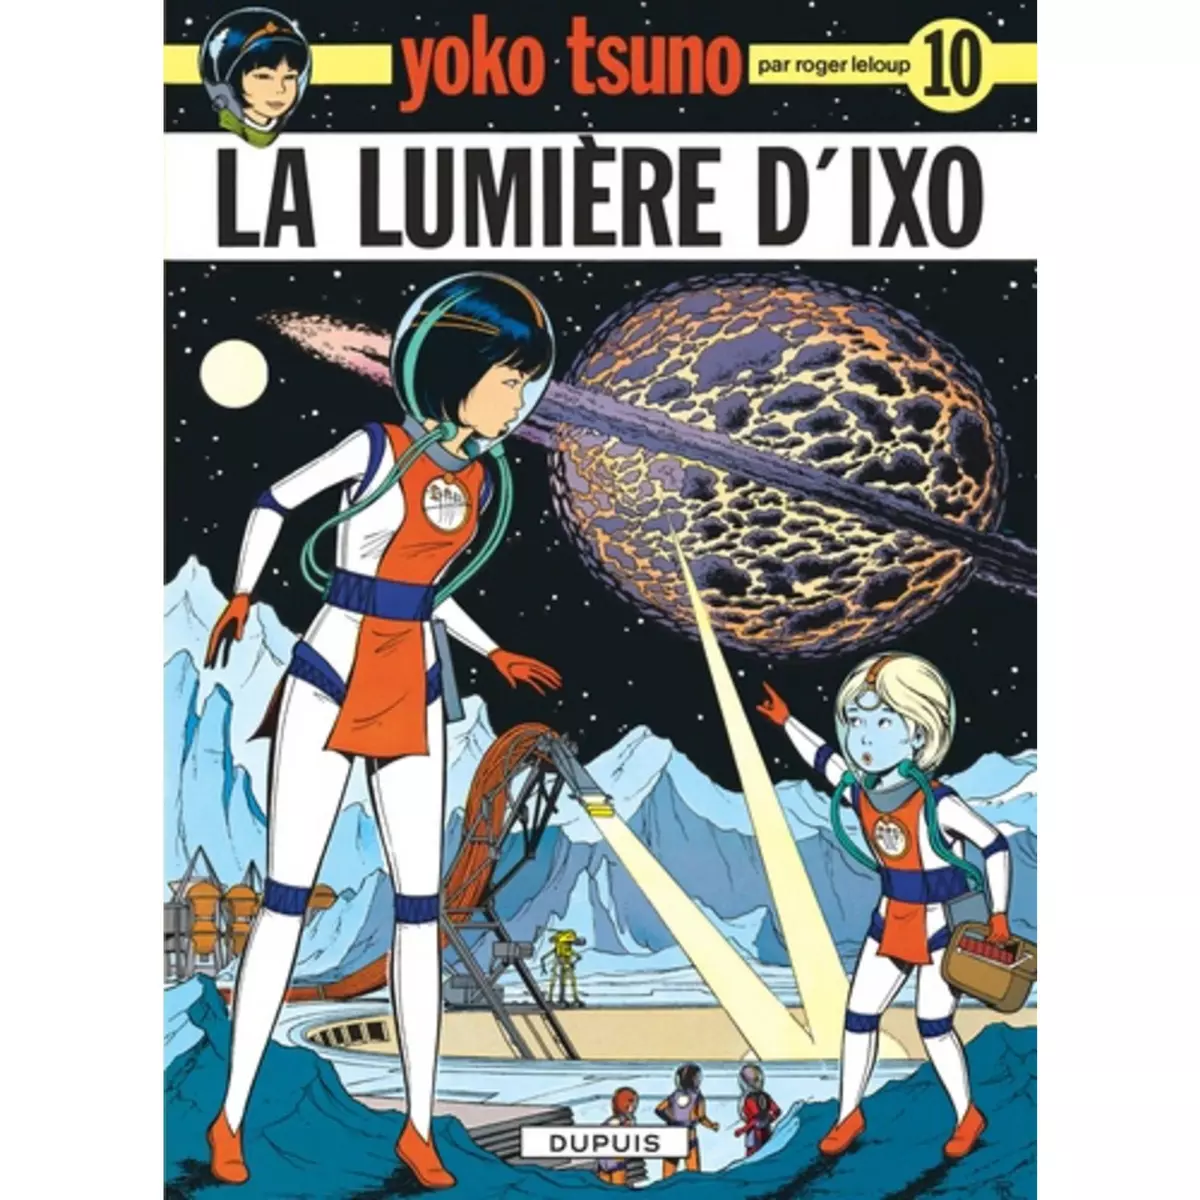  YOKO TSUNO TOME 10 : LA LUMIERE D'IXO, Leloup